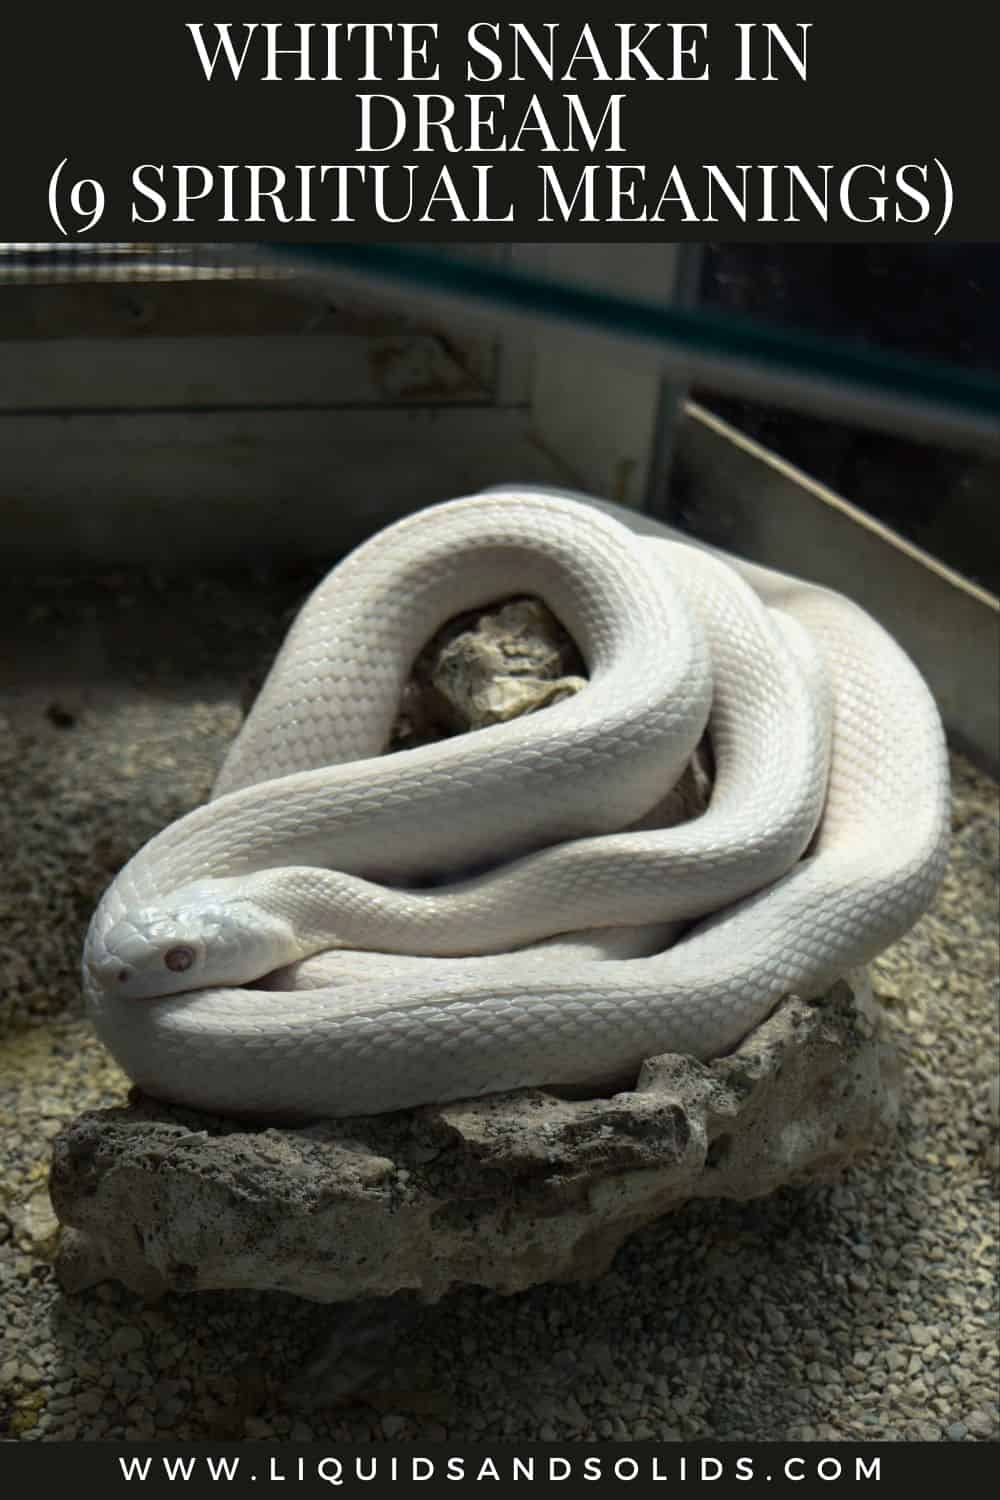 White Snake In Dream (9 Spiritual Meanings)